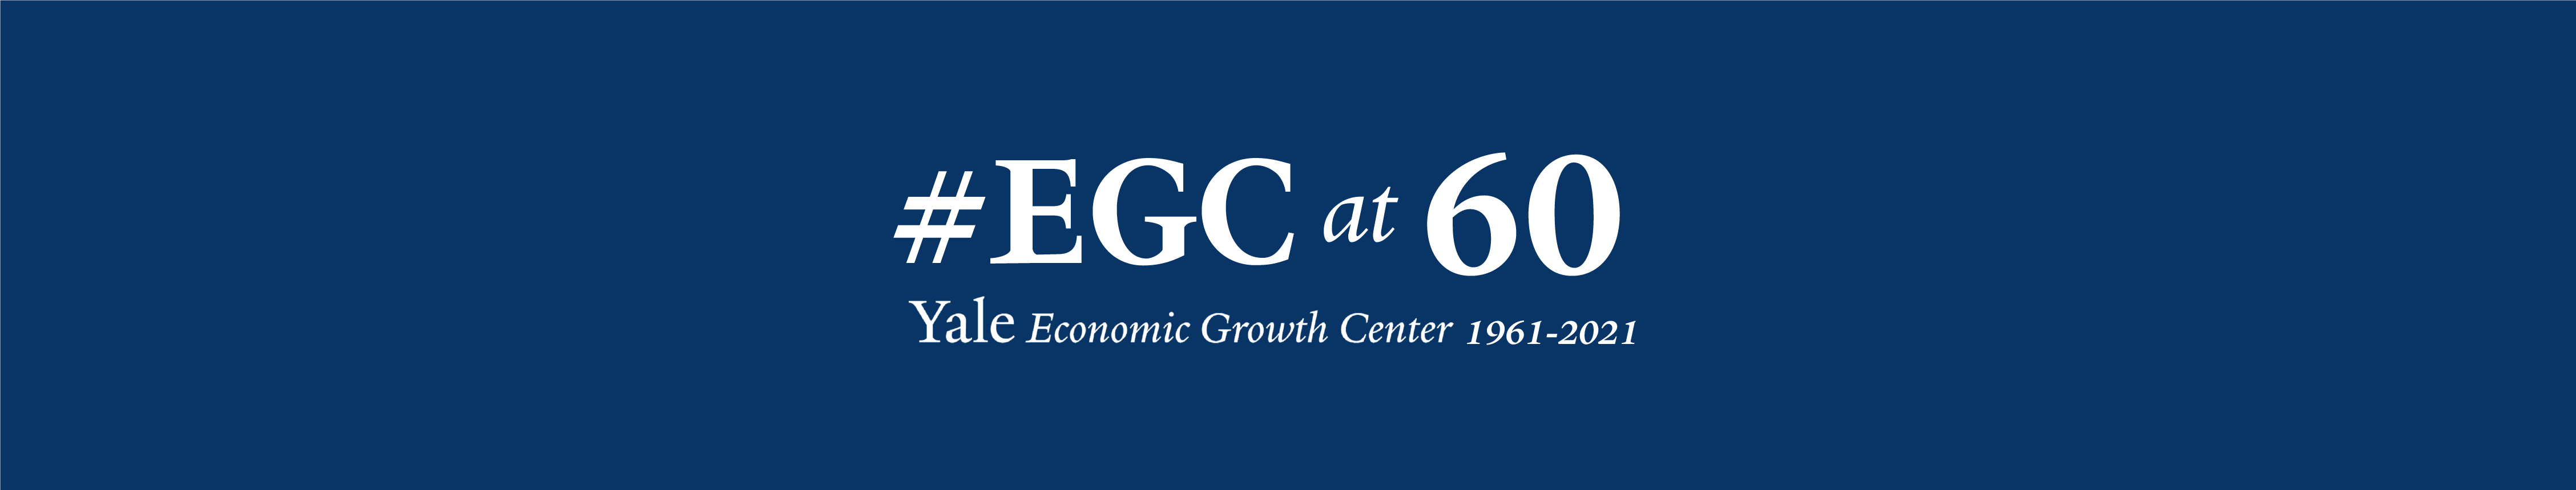 EGC at 60 Logo